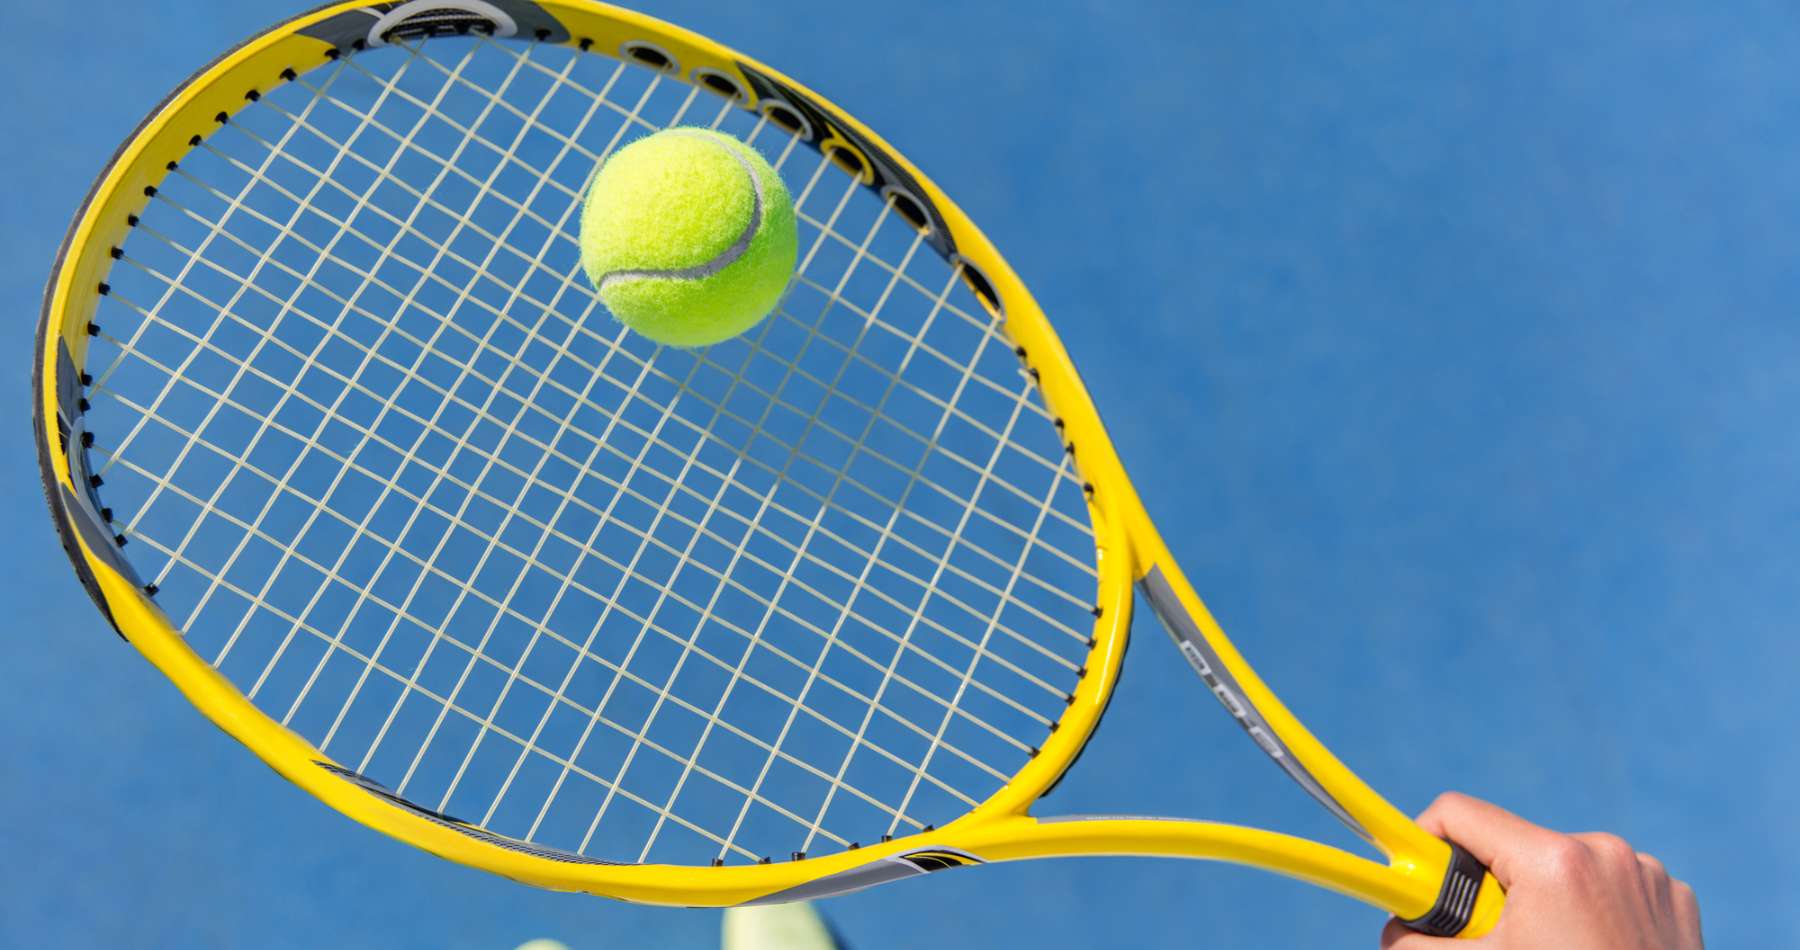 テニスラケットのおすすめメーカーを紹介 選び方やおすすめ商品も解説 Dorekau ドレカウ